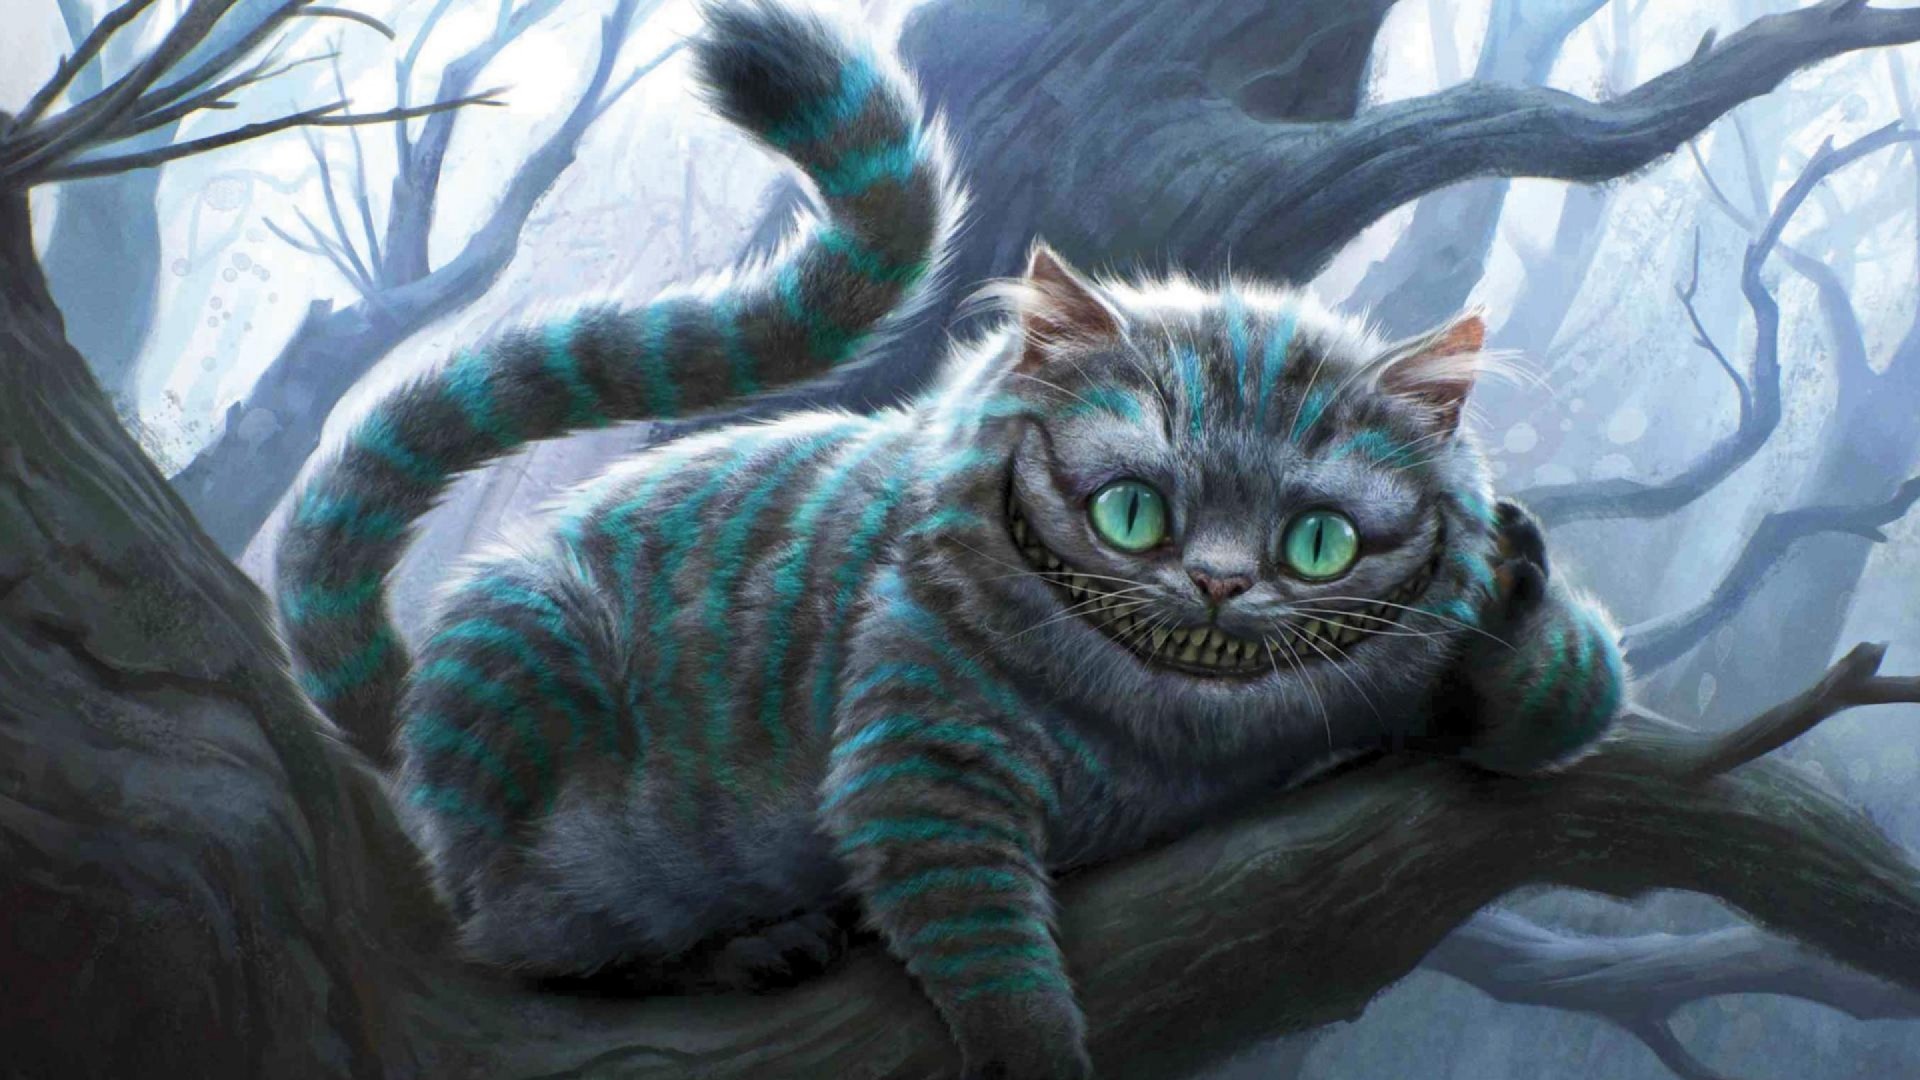 Sargasm - Alice In Wonderland Cat 3d , HD Wallpaper & Backgrounds